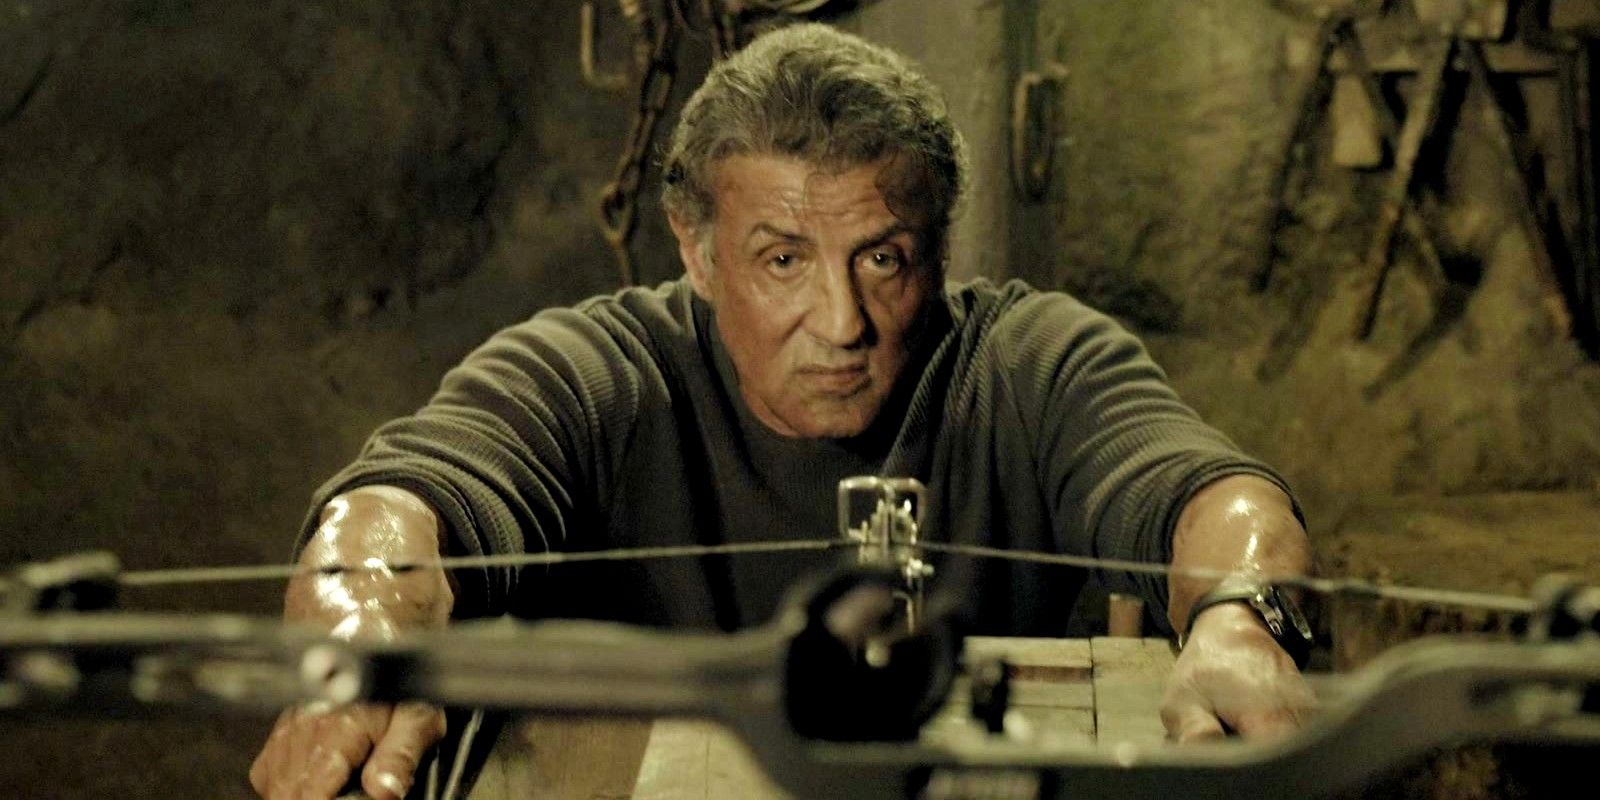 "¿Contra qué estoy luchando? ¿Artritis?"  Rambo 6 posibilidades de obtener una respuesta honesta de Sylvester Stallone